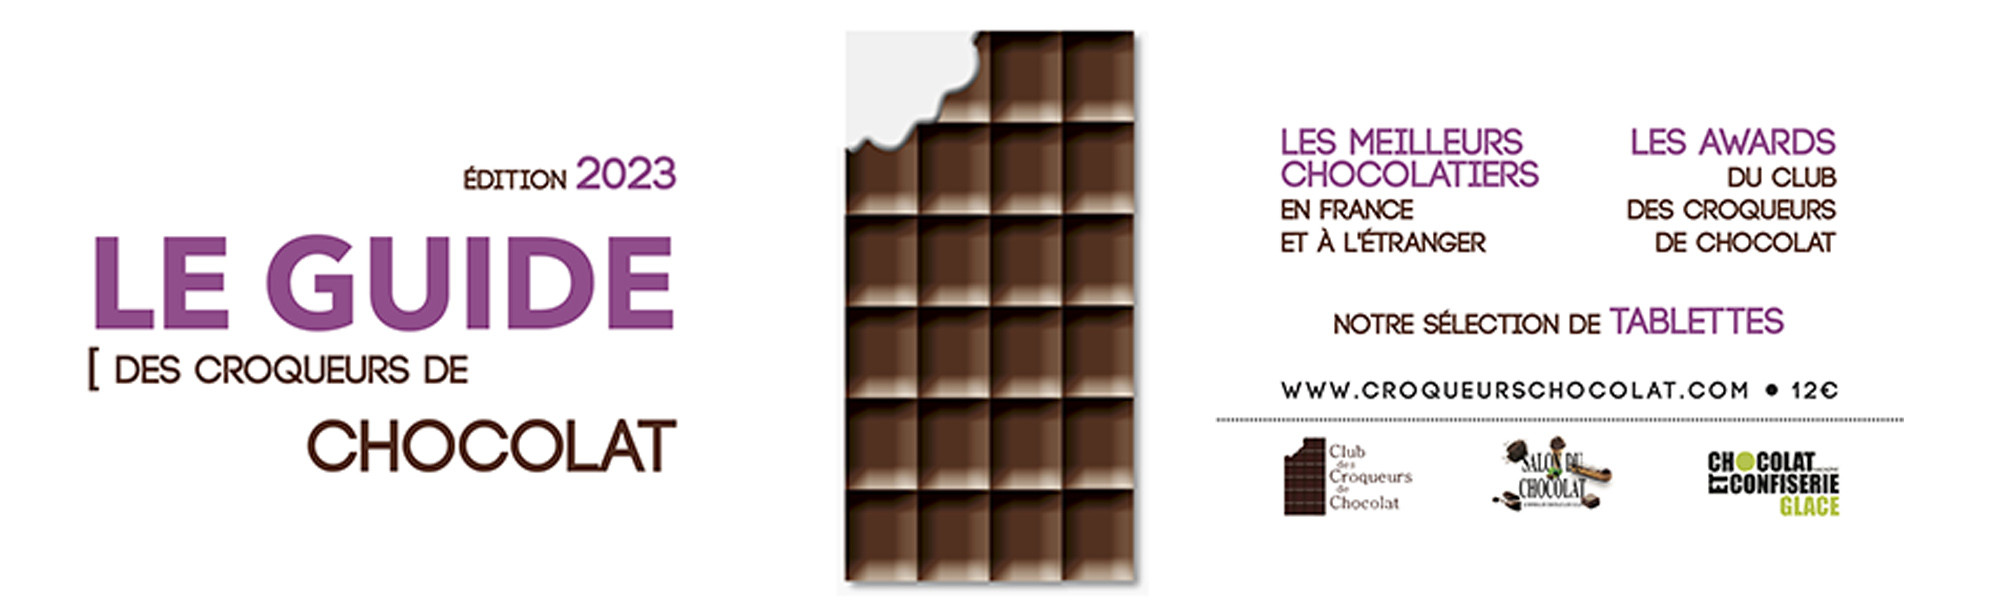 Nouveau Guide 2023 du Club des Croqueurs de Chocolat version papier